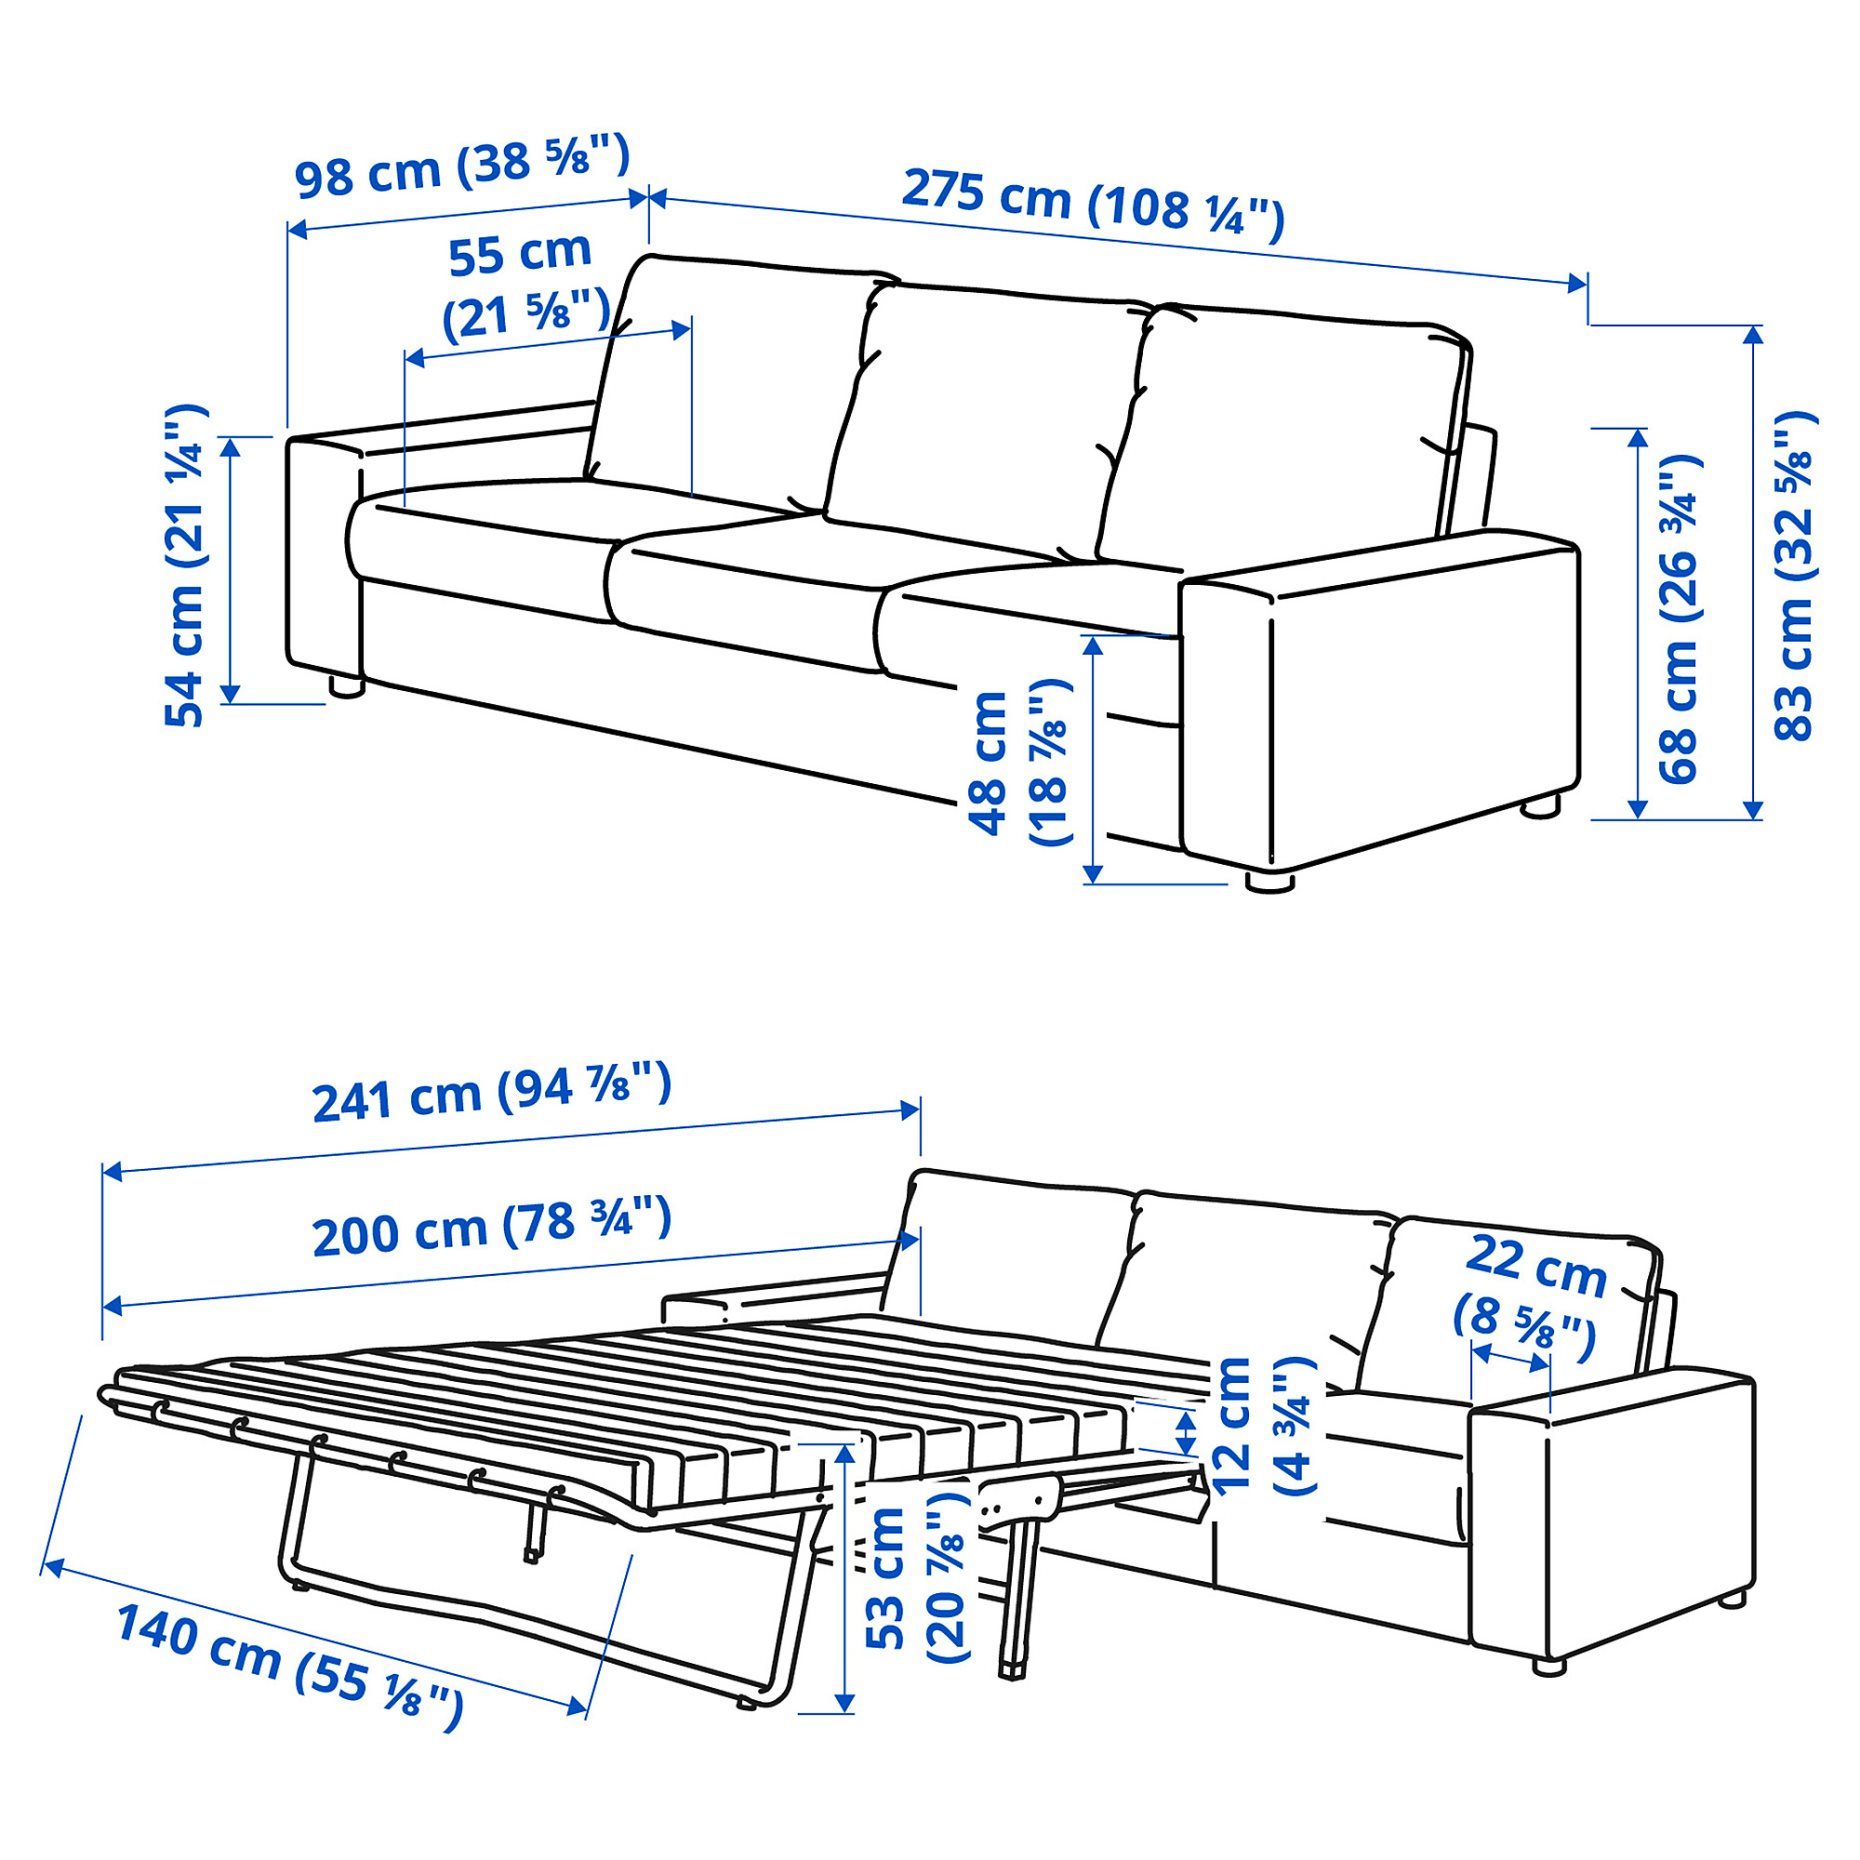 VIMLE, τριθέσιος καναπές-κρεβάτι με πλατιά μπράτσα, 295.372.32